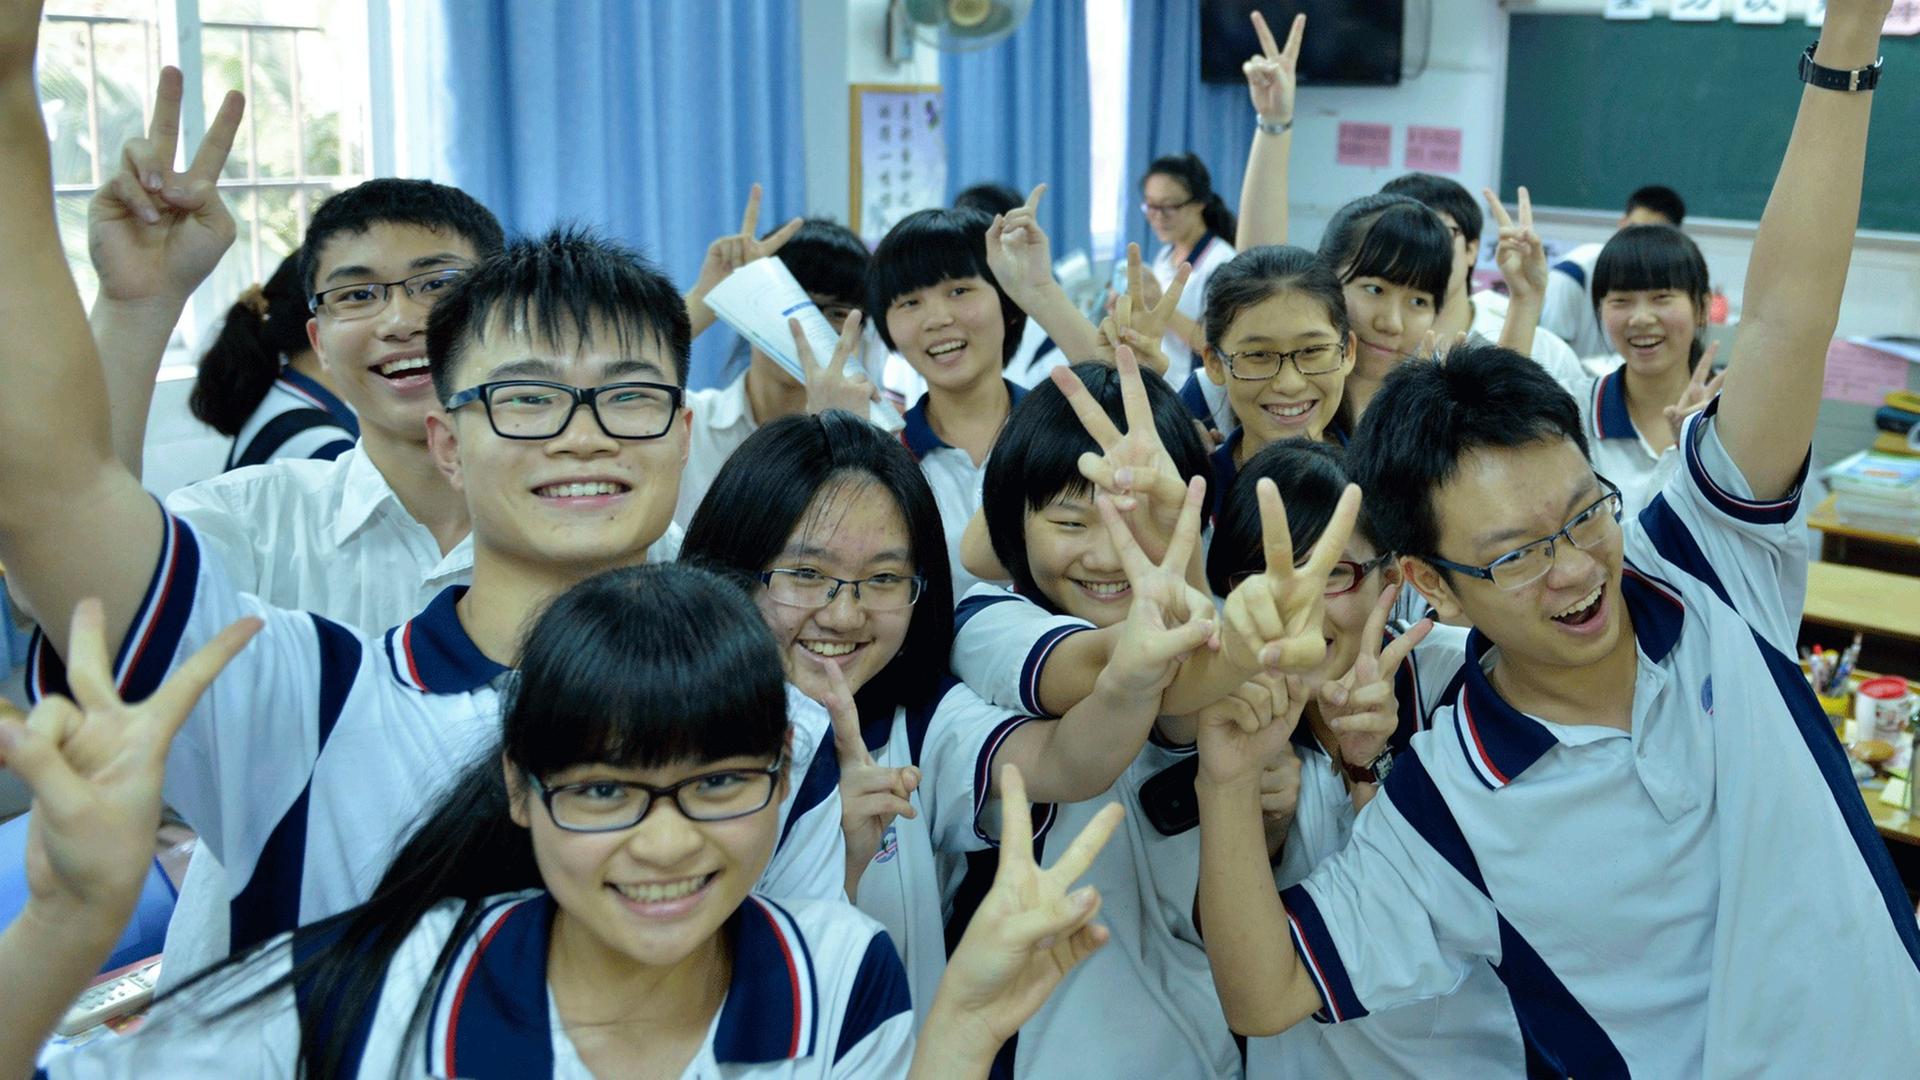 Eine chinesische Schülergruppe in Guangzhou, die ihre bestandene Aufnahmeprüfung für die Uni feiert. Die Schüler tragen kurzärmelige Uniformen und machen das Peace-Zeichen.